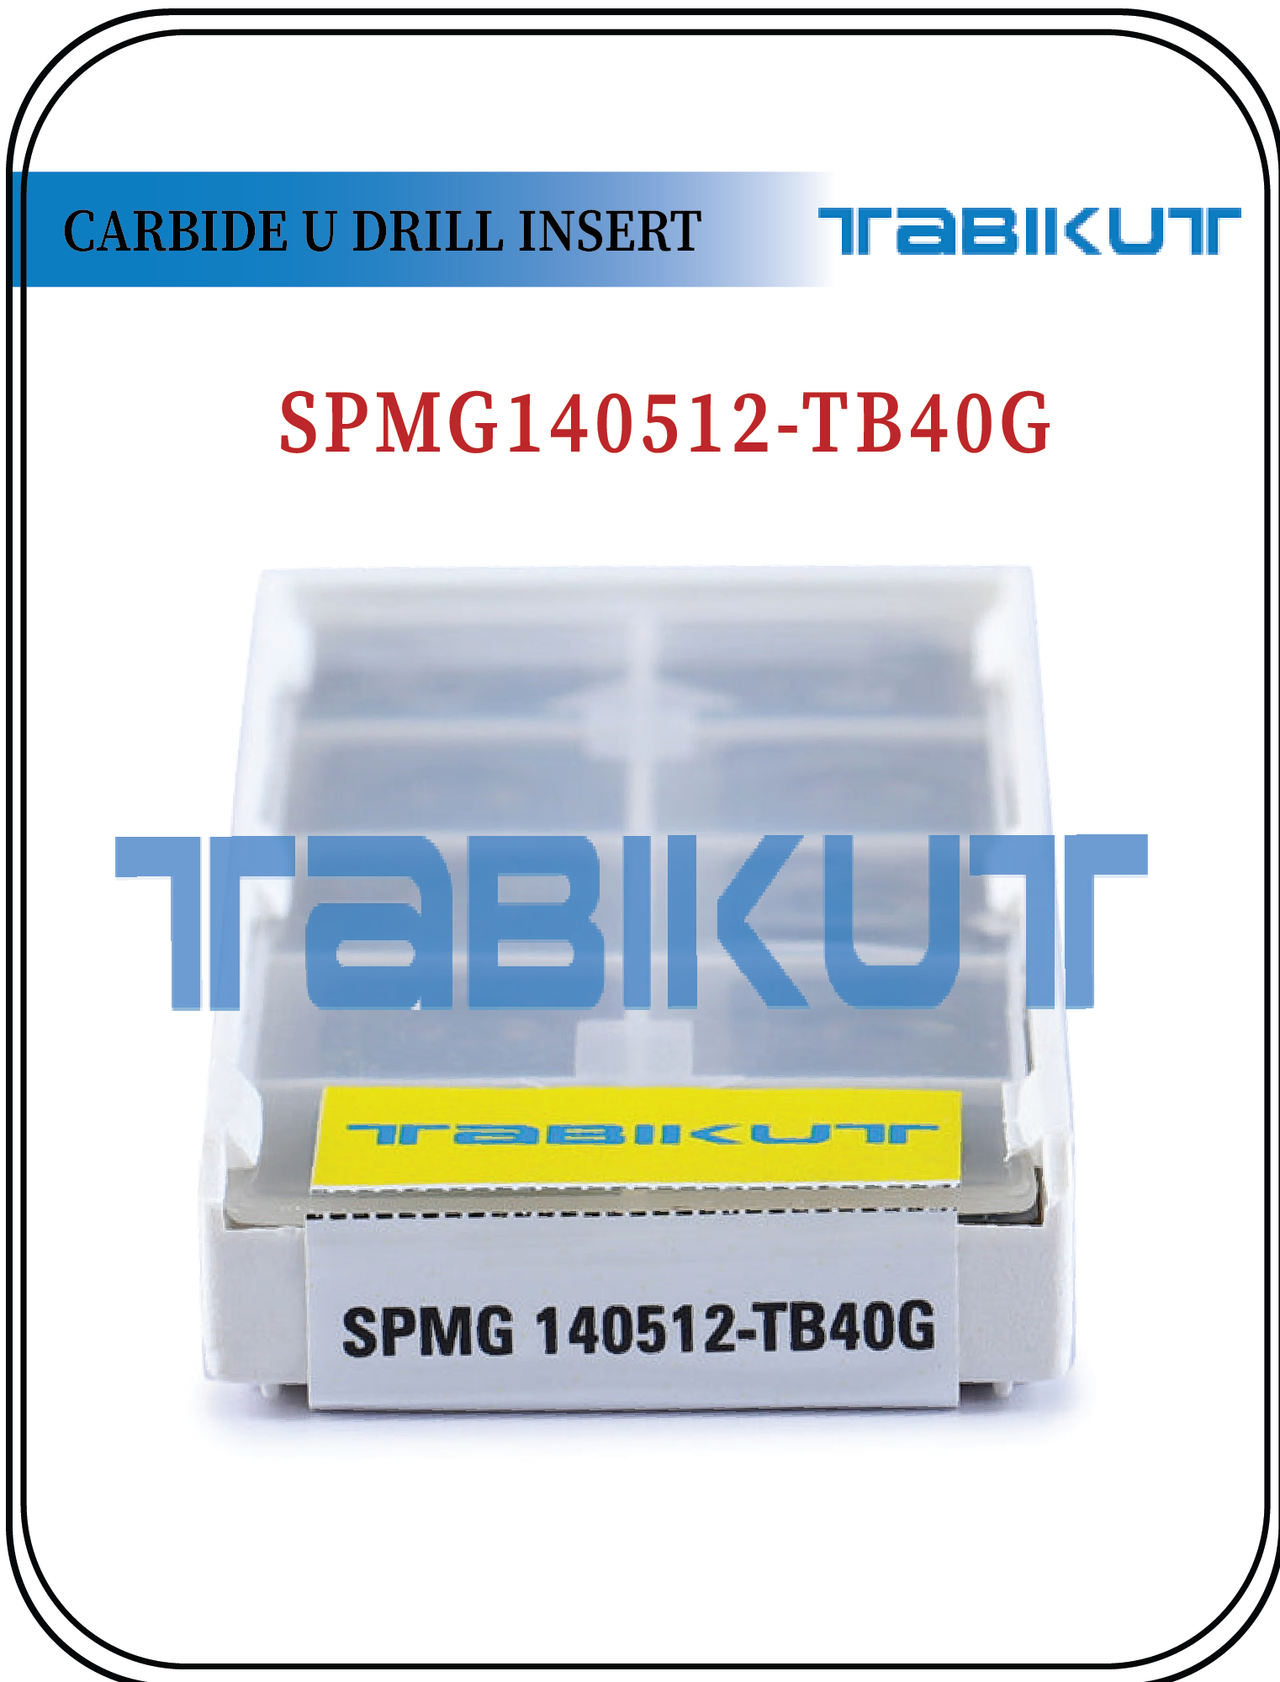 SPMG140512 TABIKUT Carbide Drilling Insert